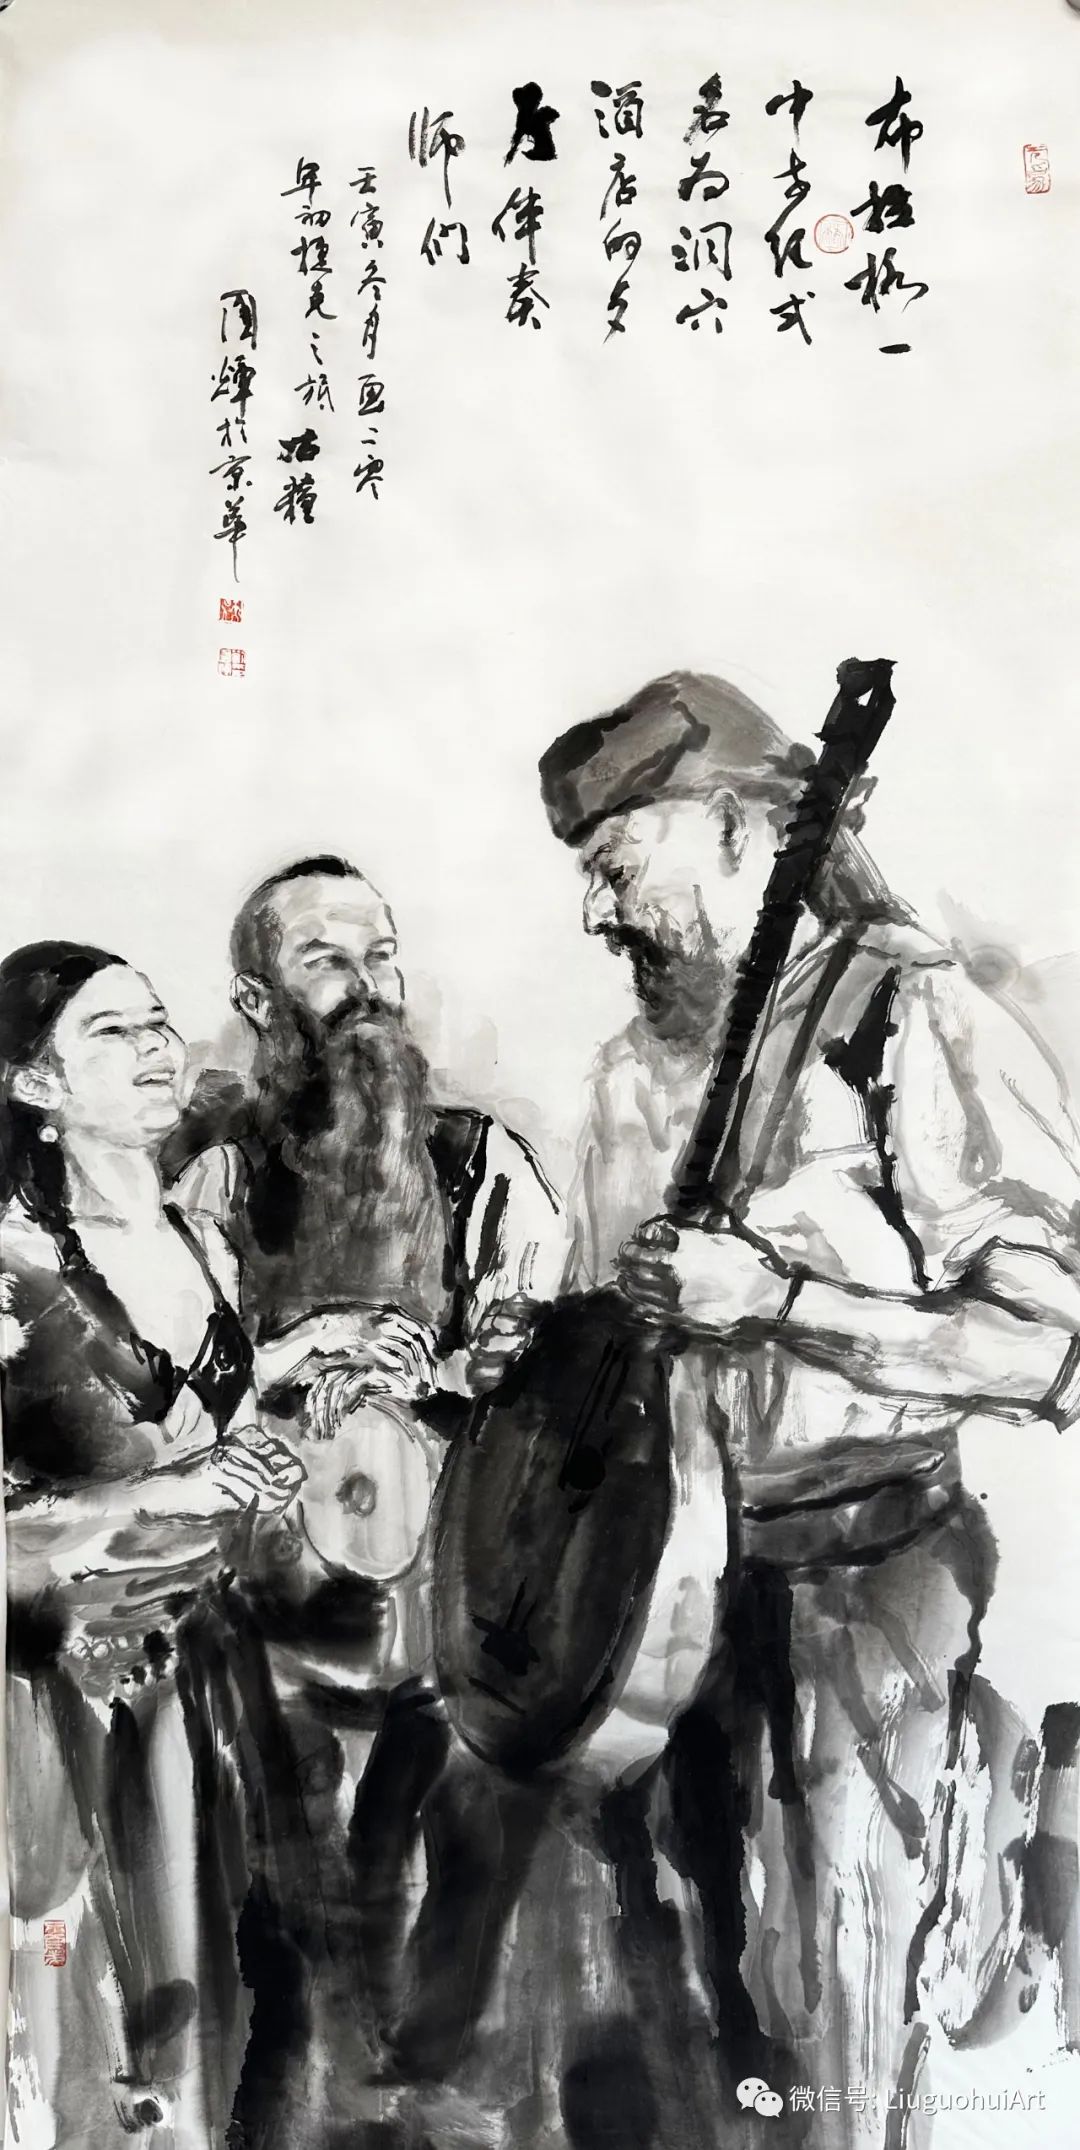 大桥、老街、艺人、伴奏师……著名画家刘国辉回眸往日捷克之旅